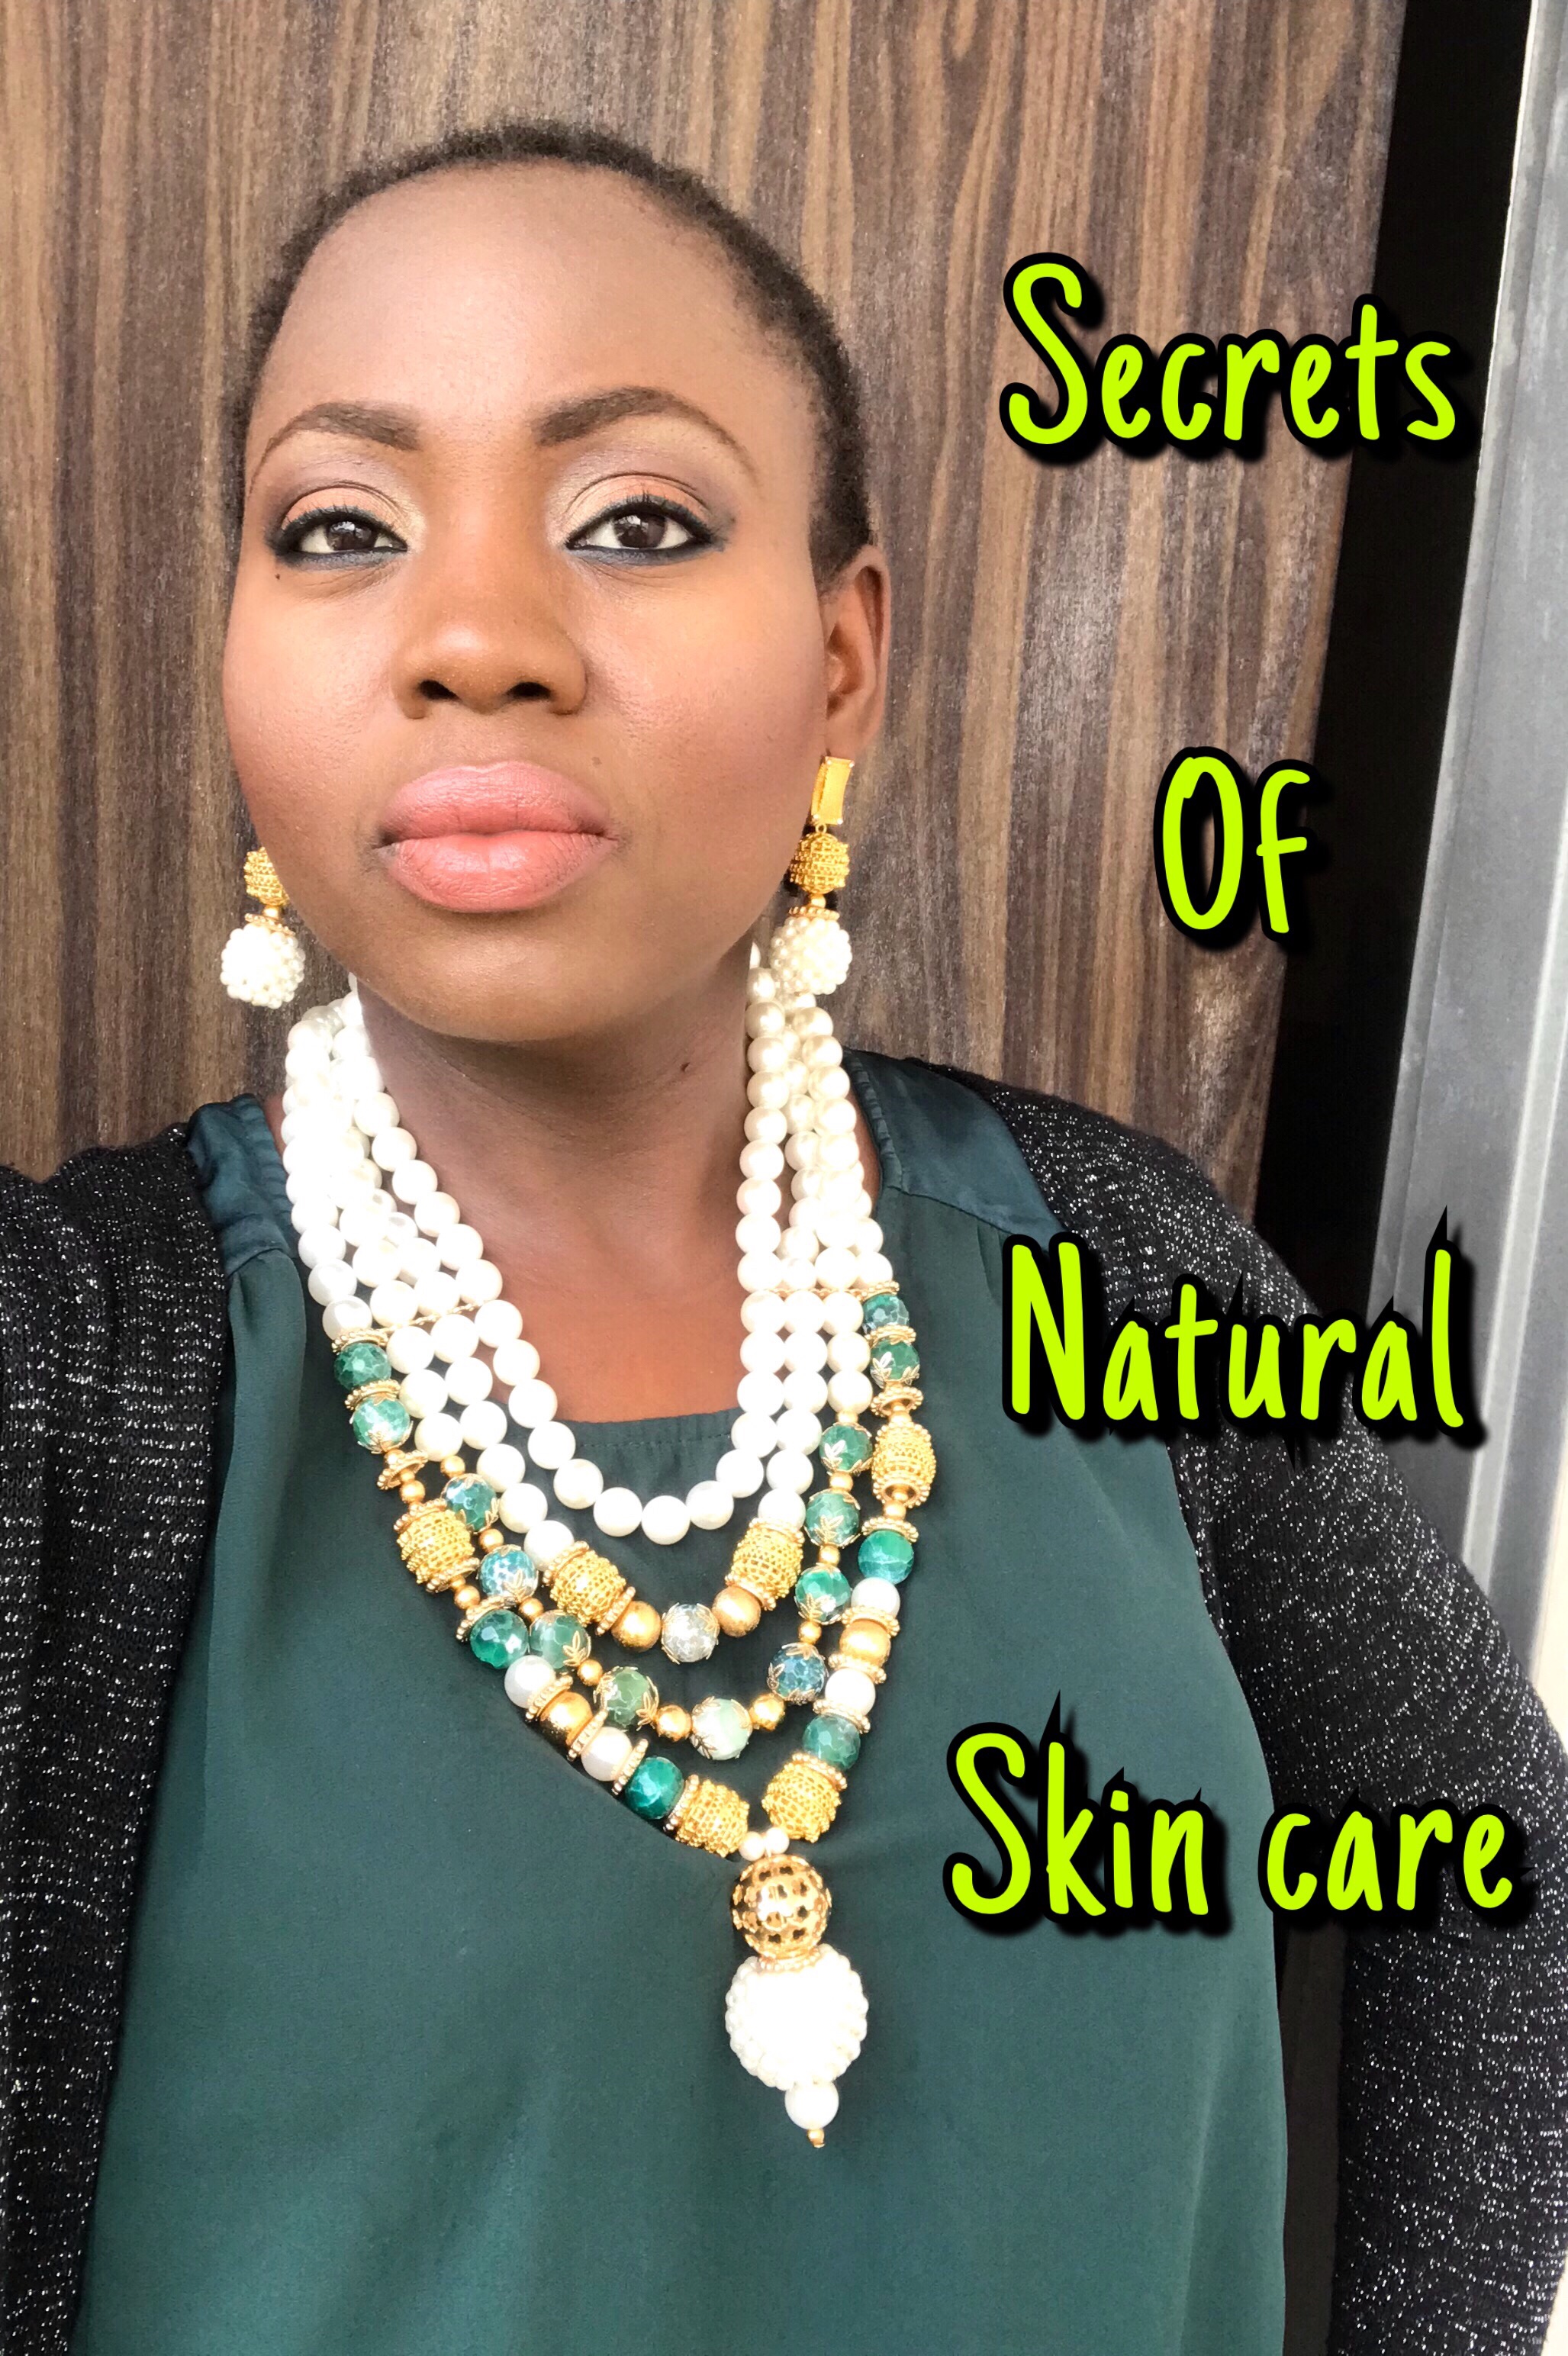 Secrets of Natural skin care